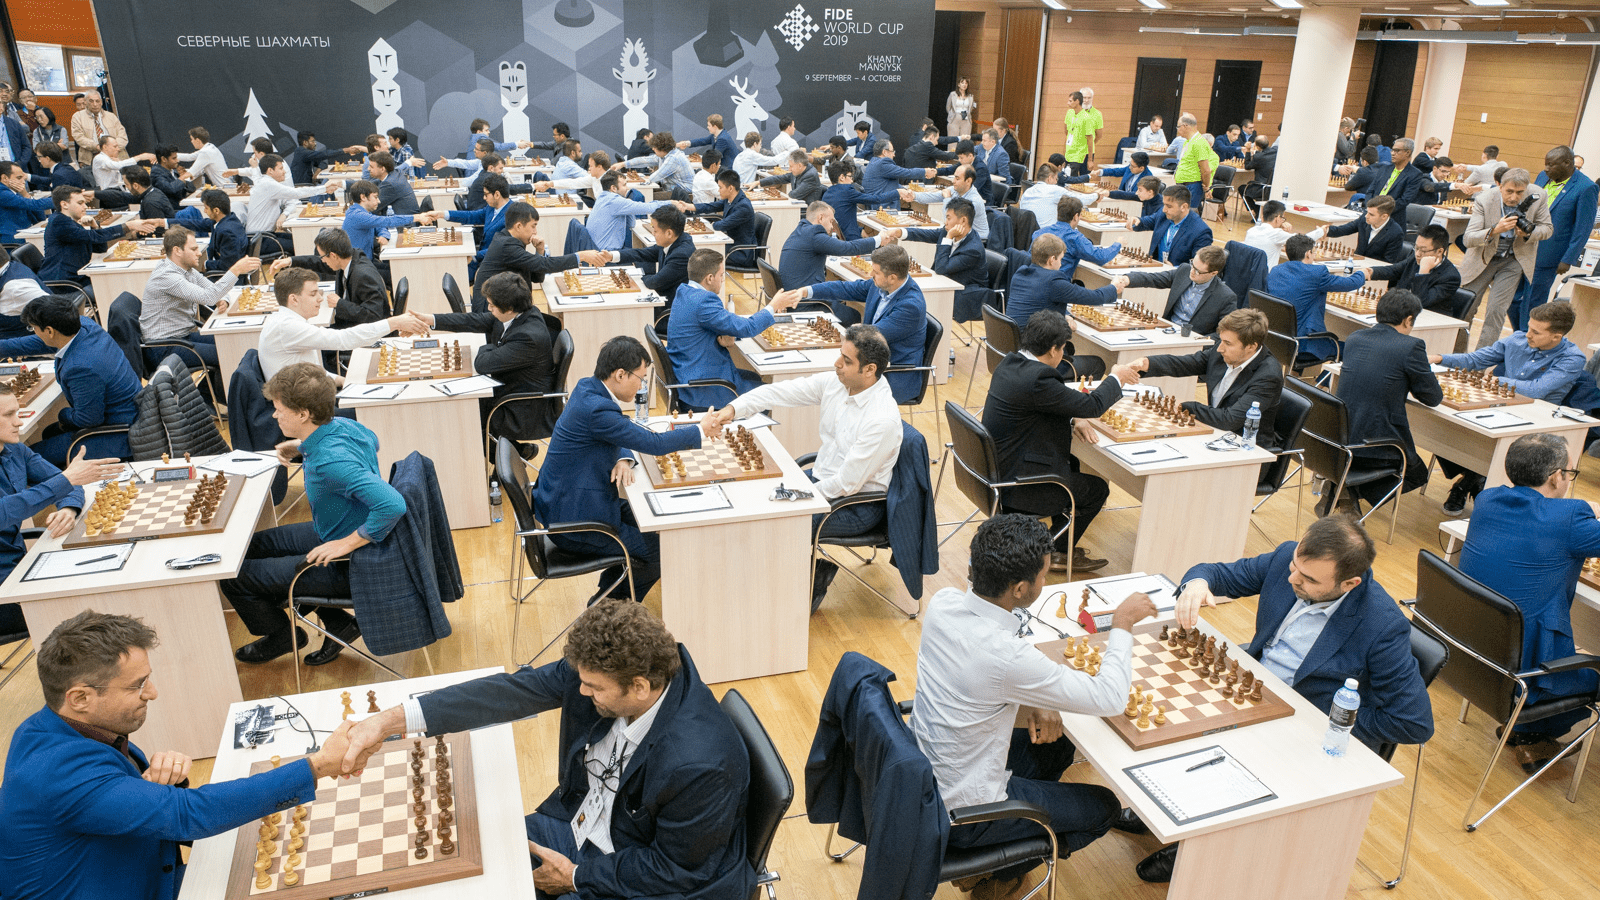 Campeonato Mundial de Xadrez foi adiado para 2021 